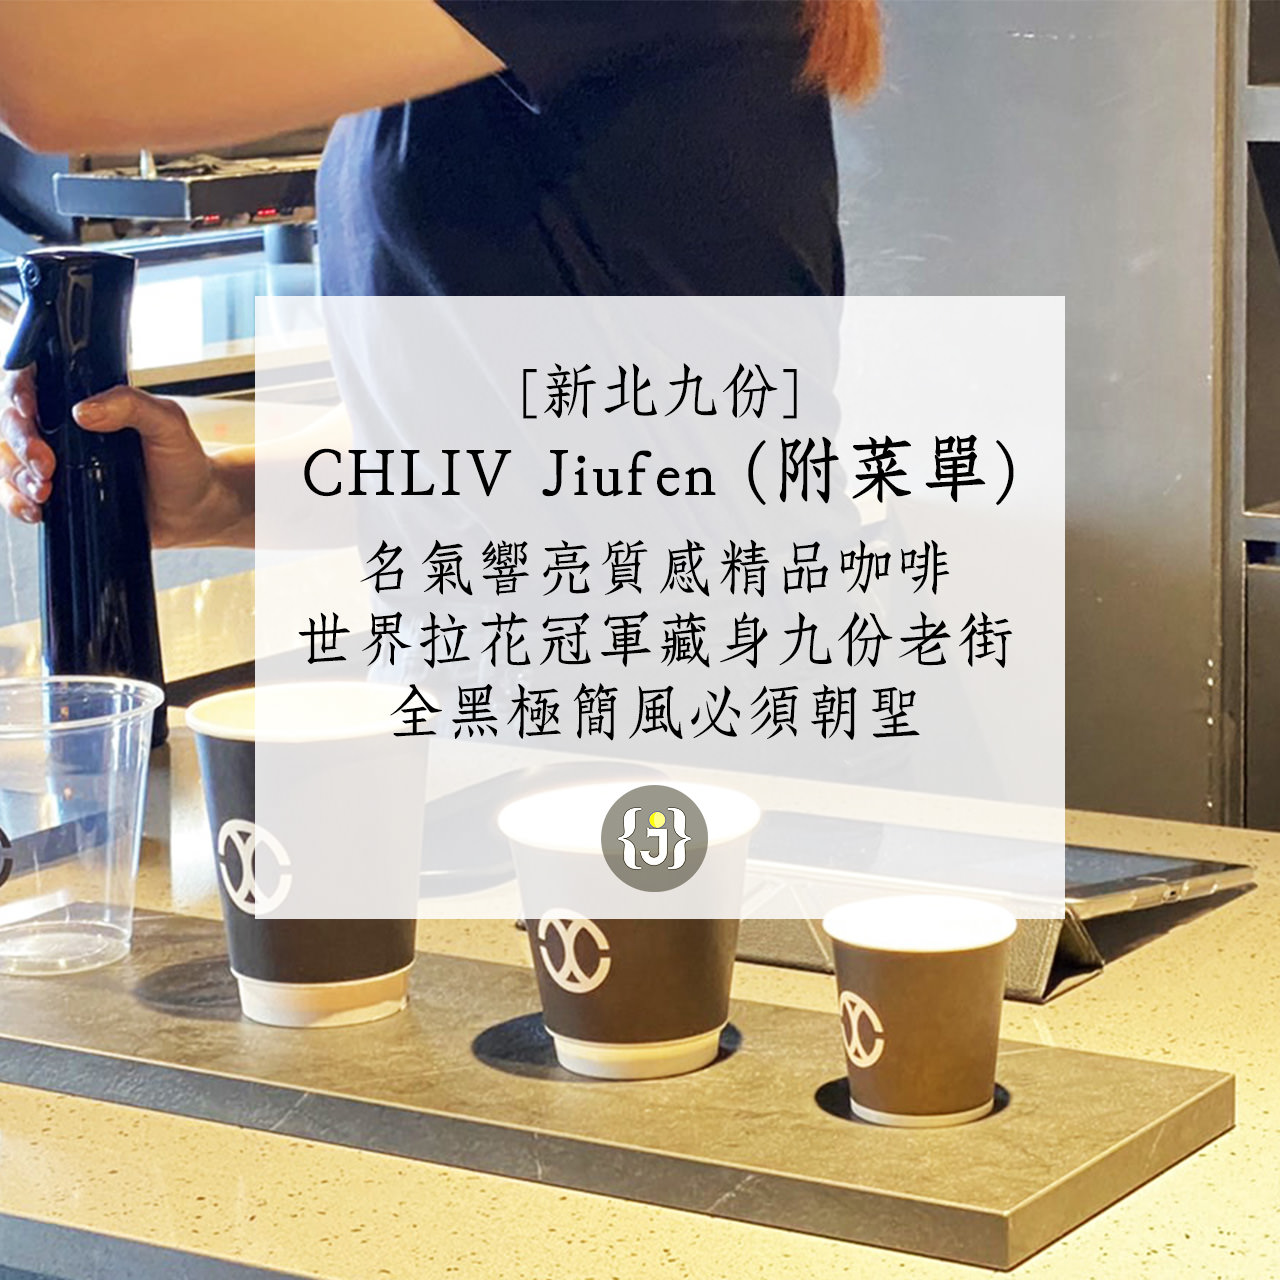 【新北九份】CHLIV Jiufen，名氣響亮的質感精品咖啡，世界拉花冠軍藏身九份老街，全黑極簡風必須朝聖